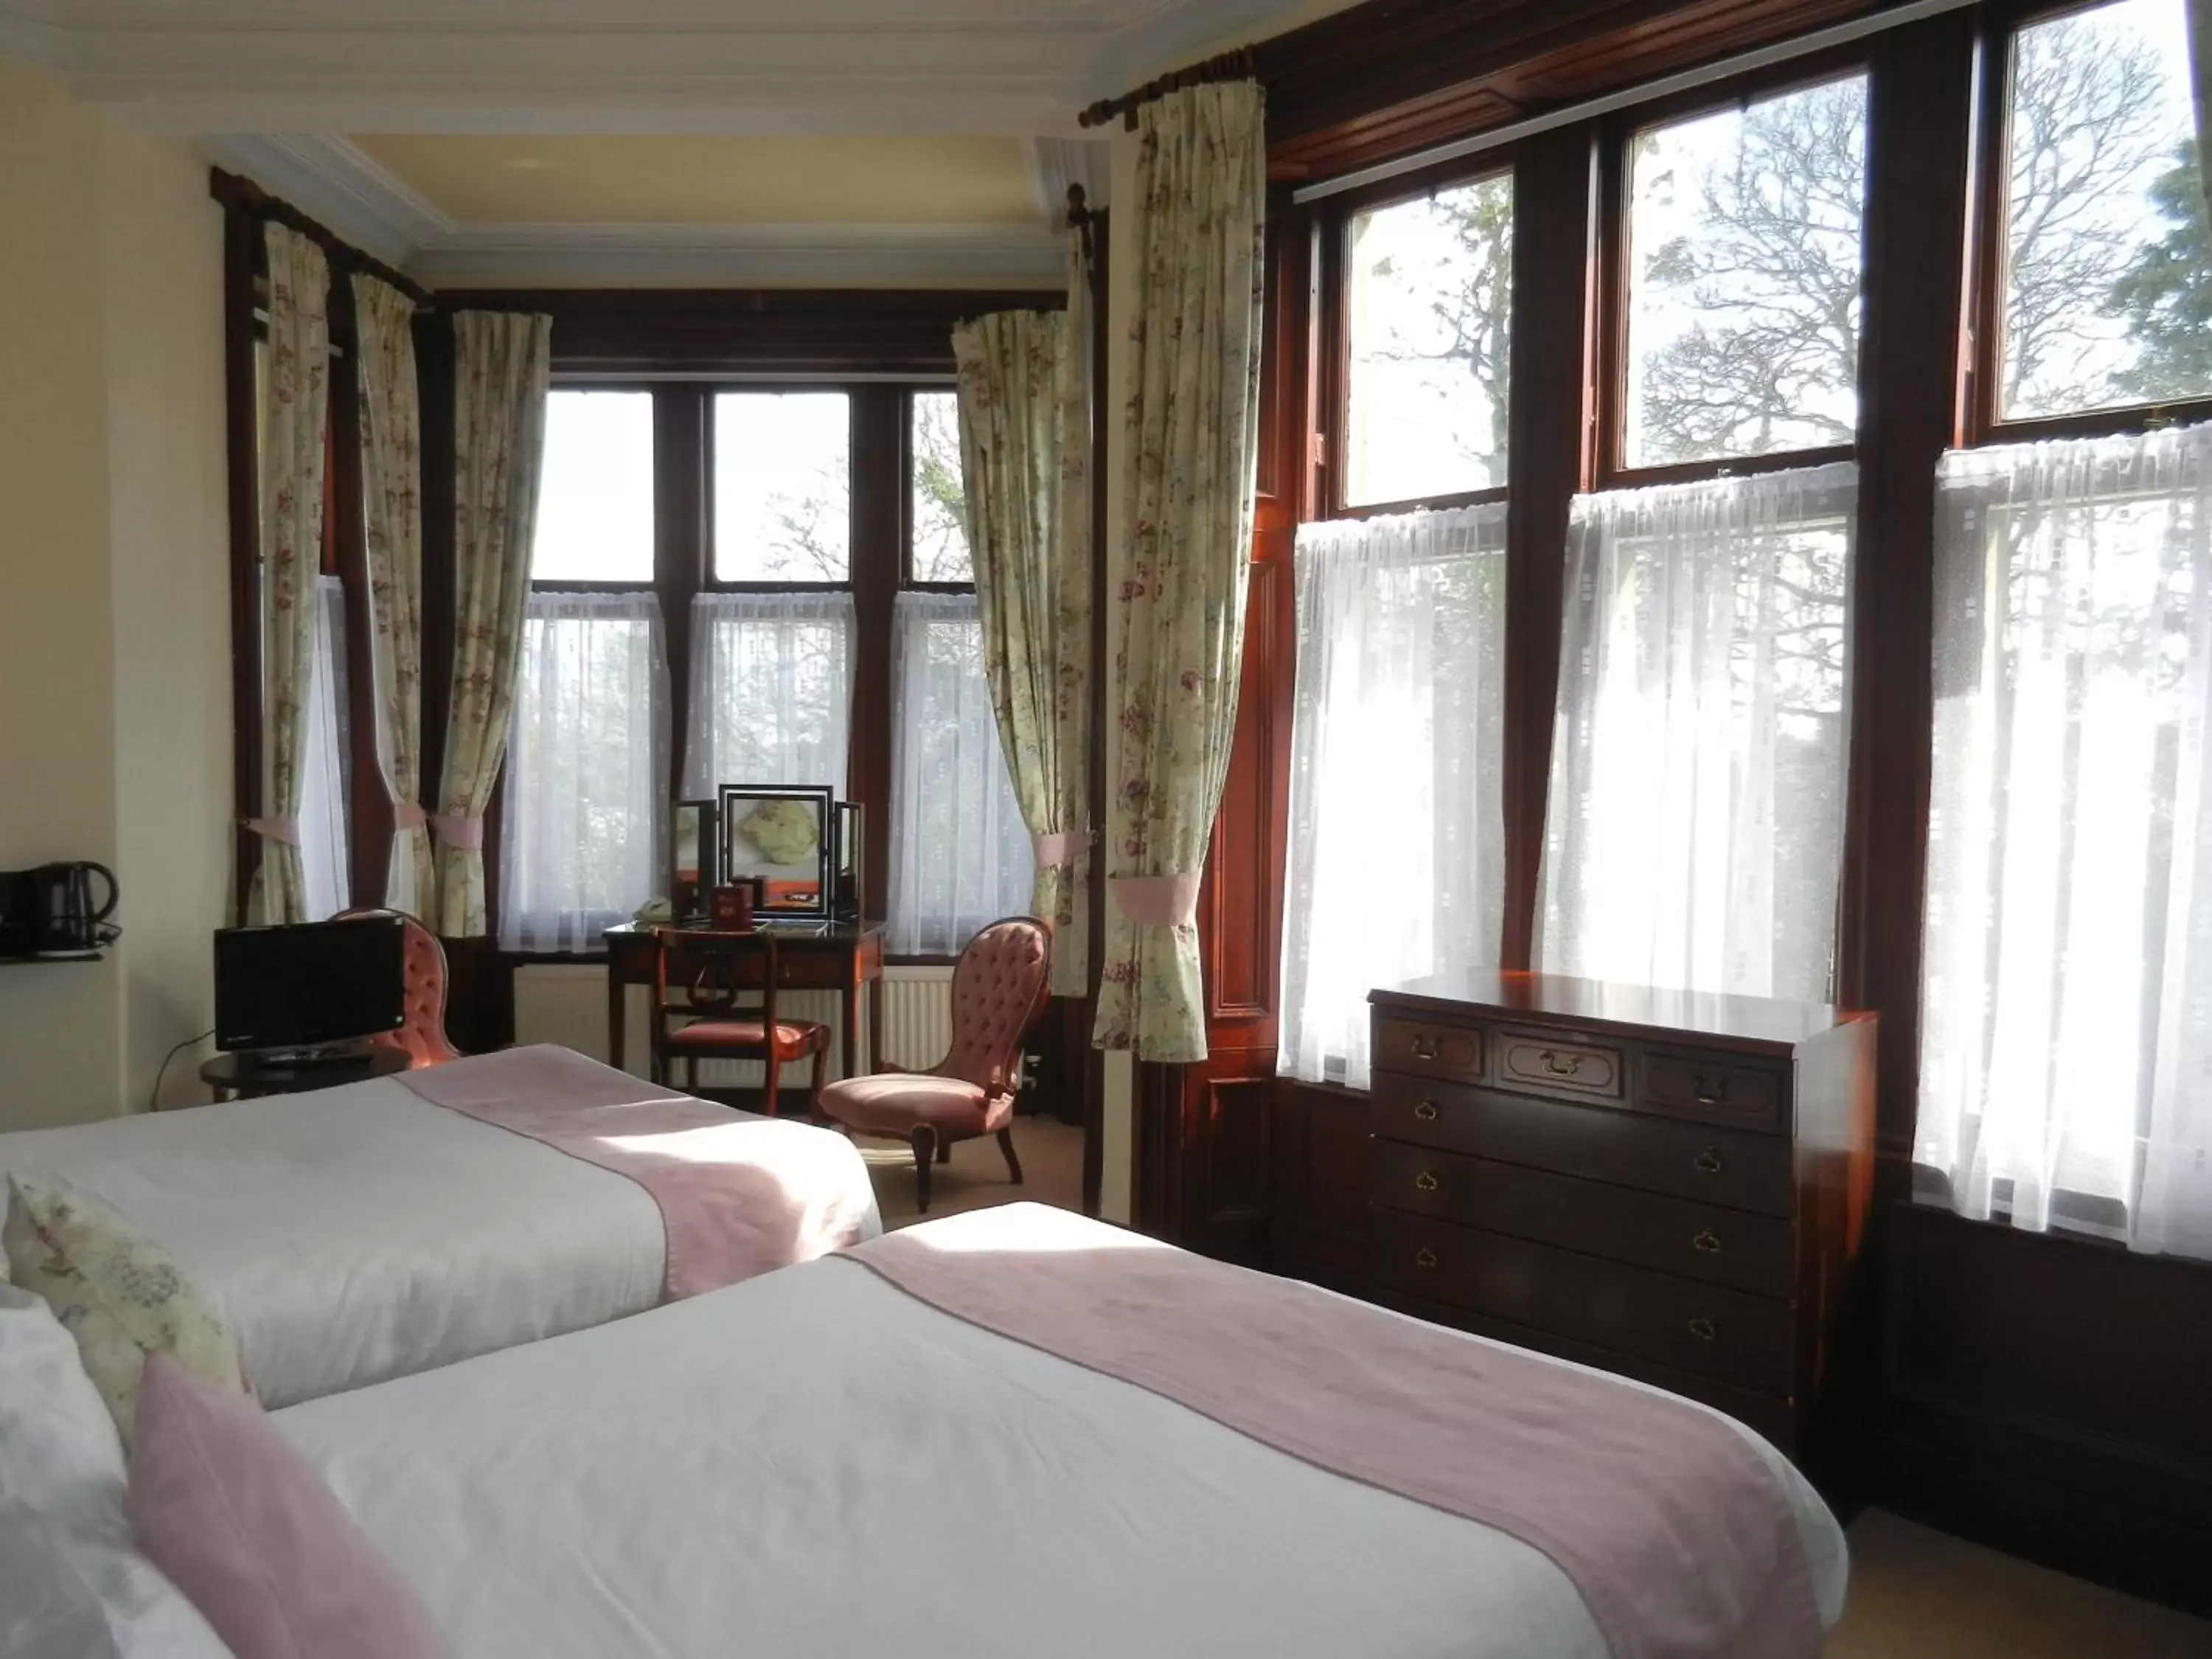 Bed in Morangie Hotel Tain